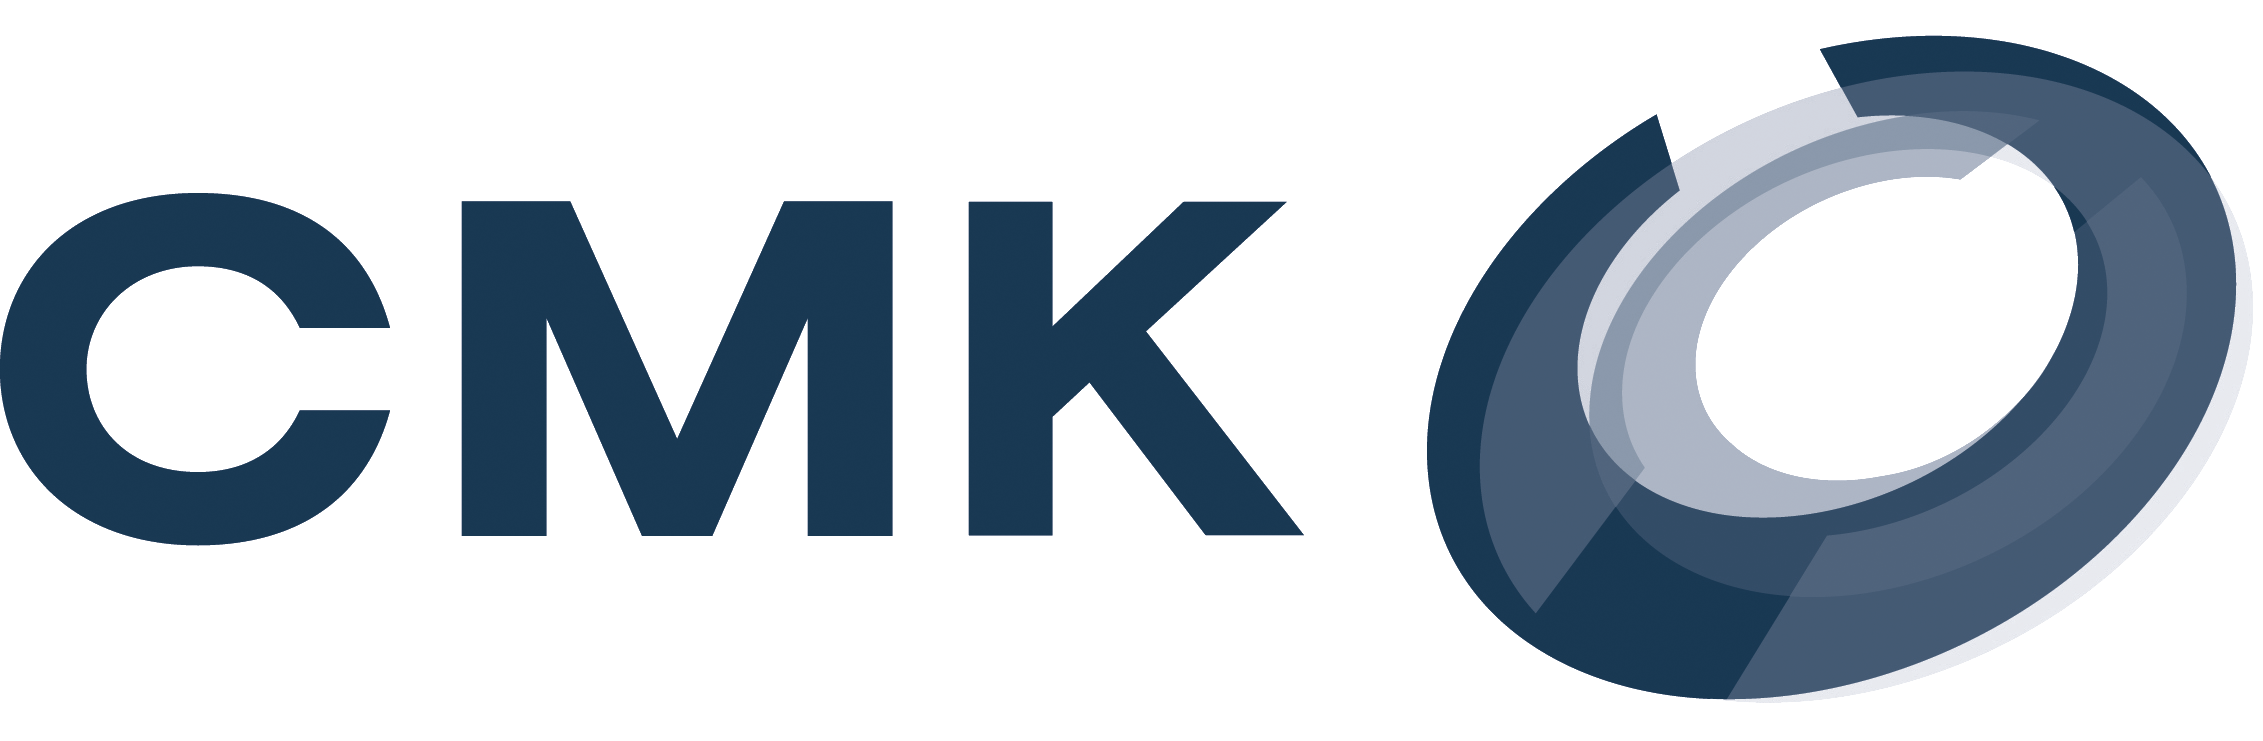 Оао смк. АО «Ступинская металлургическая компания» (СМК). Логотип СМК Ступино. Логотипа для компании СМК. АО СМК лого.